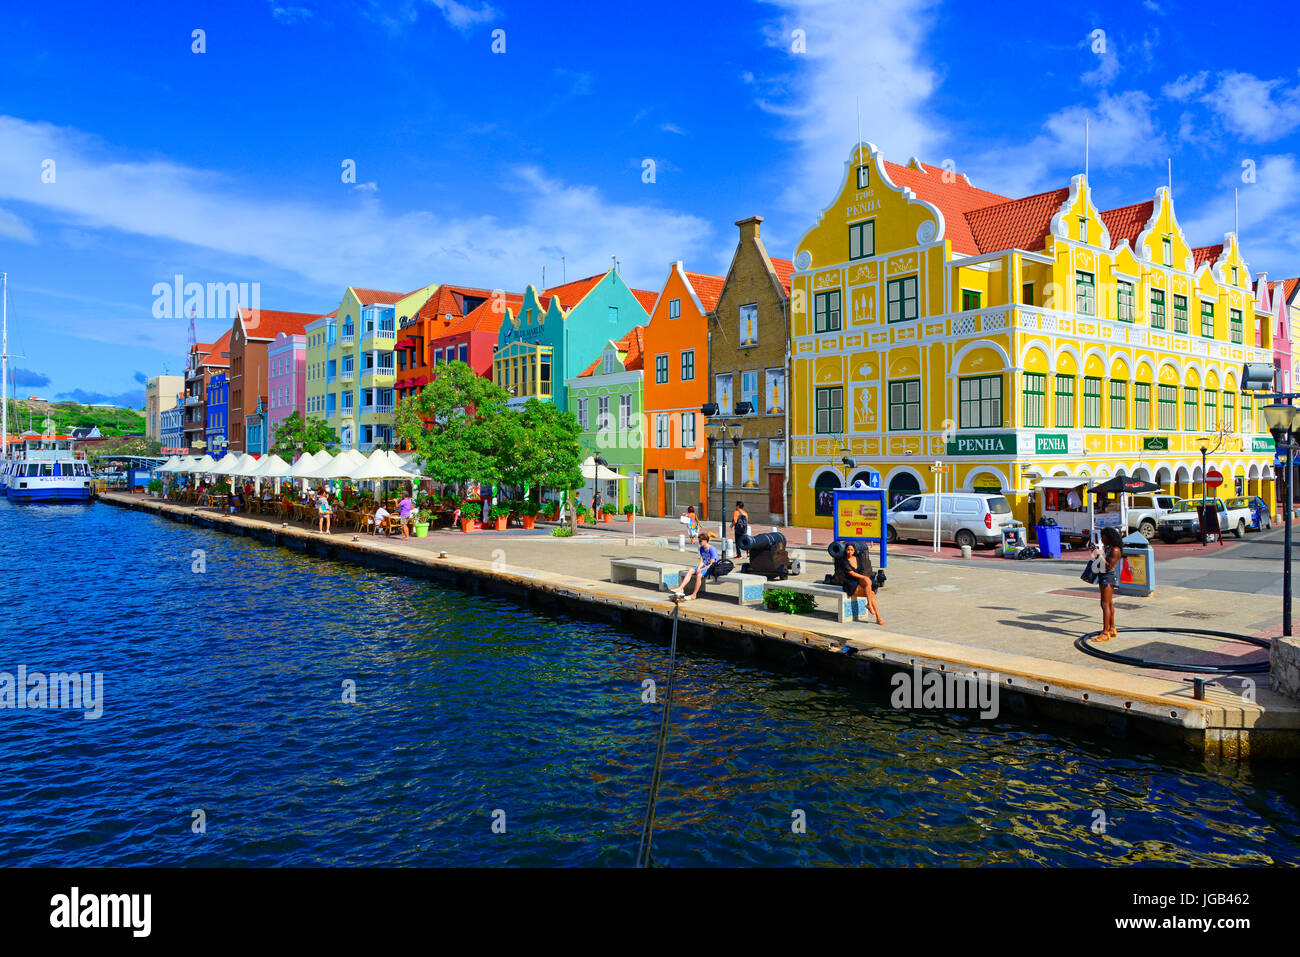 Maisons de marchands Handelskade Willemstad Curaçao île des Caraïbes néerlandaises Pays-bas le Sud de l'île des Caraïbes Croisière de Miami en Floride Banque D'Images